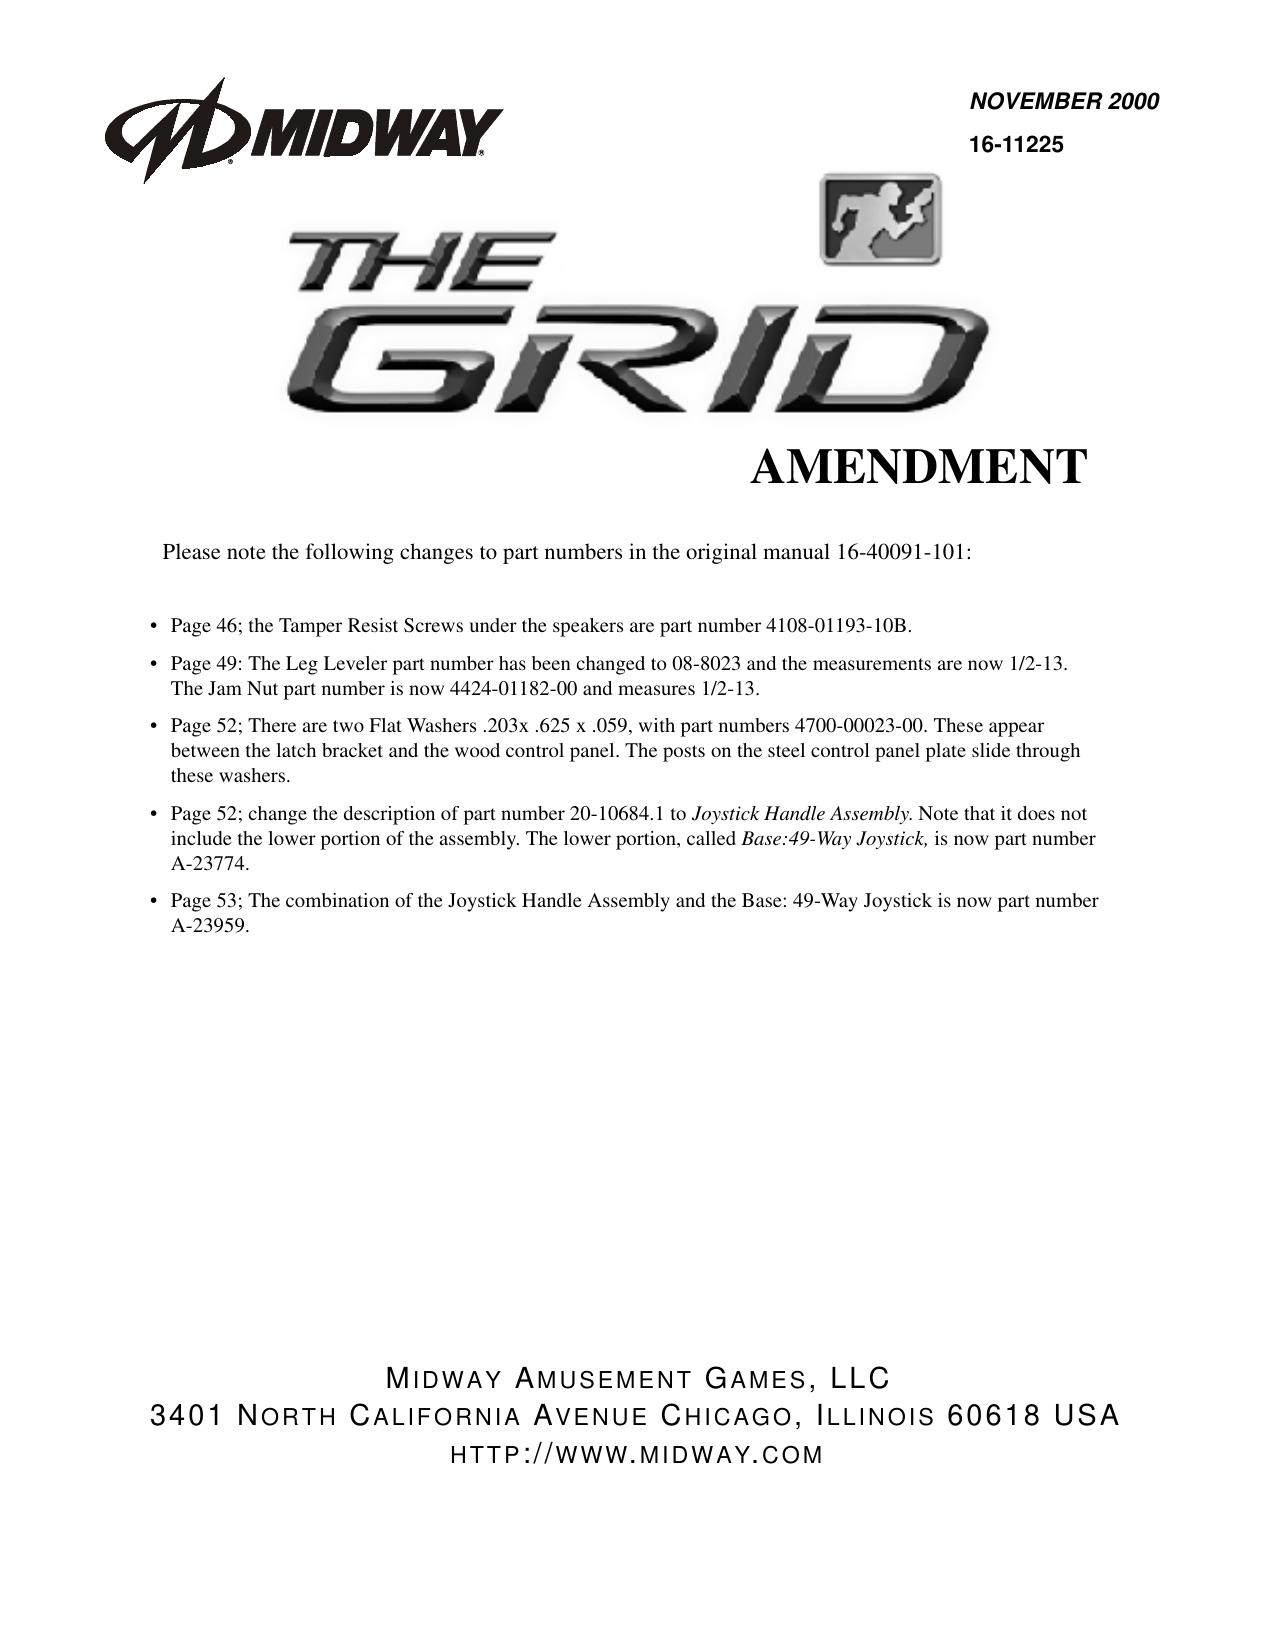 The Grid Amendment